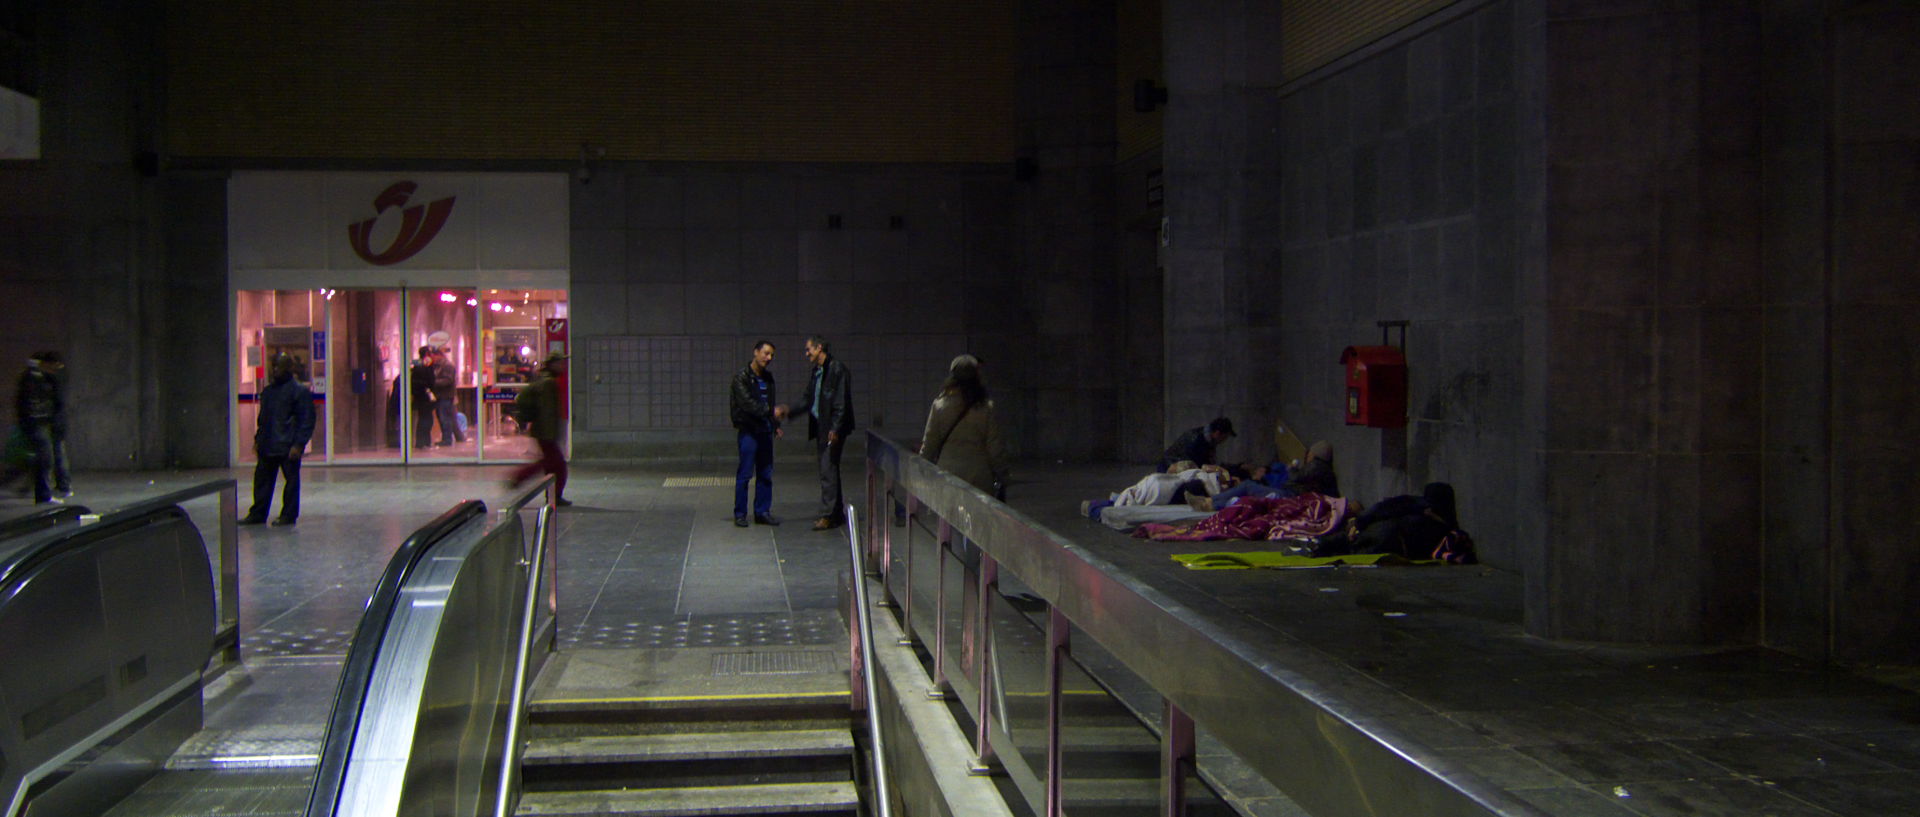 Photo de scène de rue, Bruxelles, station de métro Bruxelles midi.